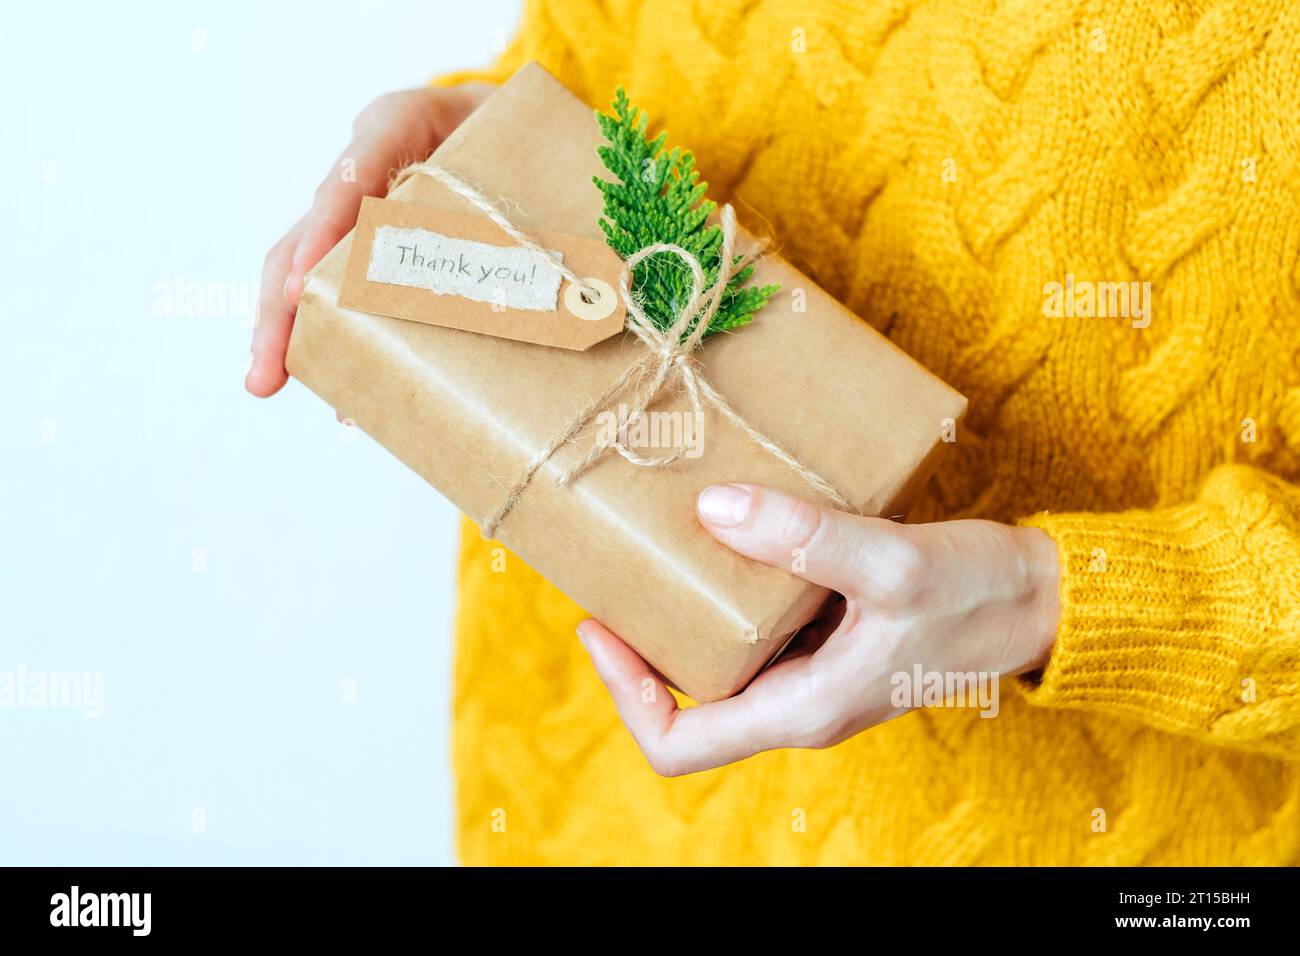 Una donna irriconoscibile in maglione giallo con confezione regalo ecologica con etichetta con le parole "grazie". Concetto di vita sostenibile ed eco-consapevole Foto Stock